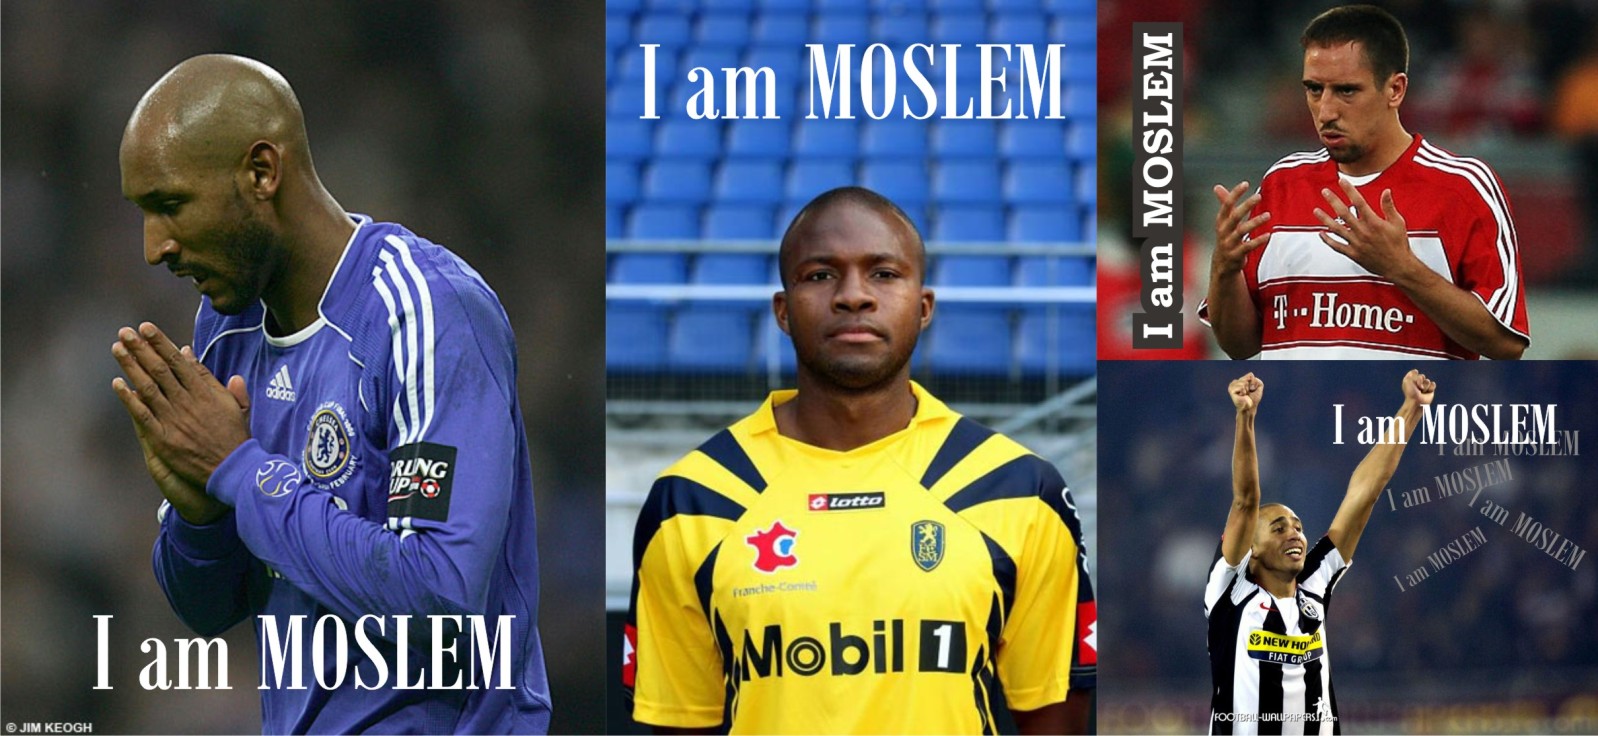 Daftar Pemain Sepak Bola Kelas Dunia Di Eropa Yang Beragama Islam